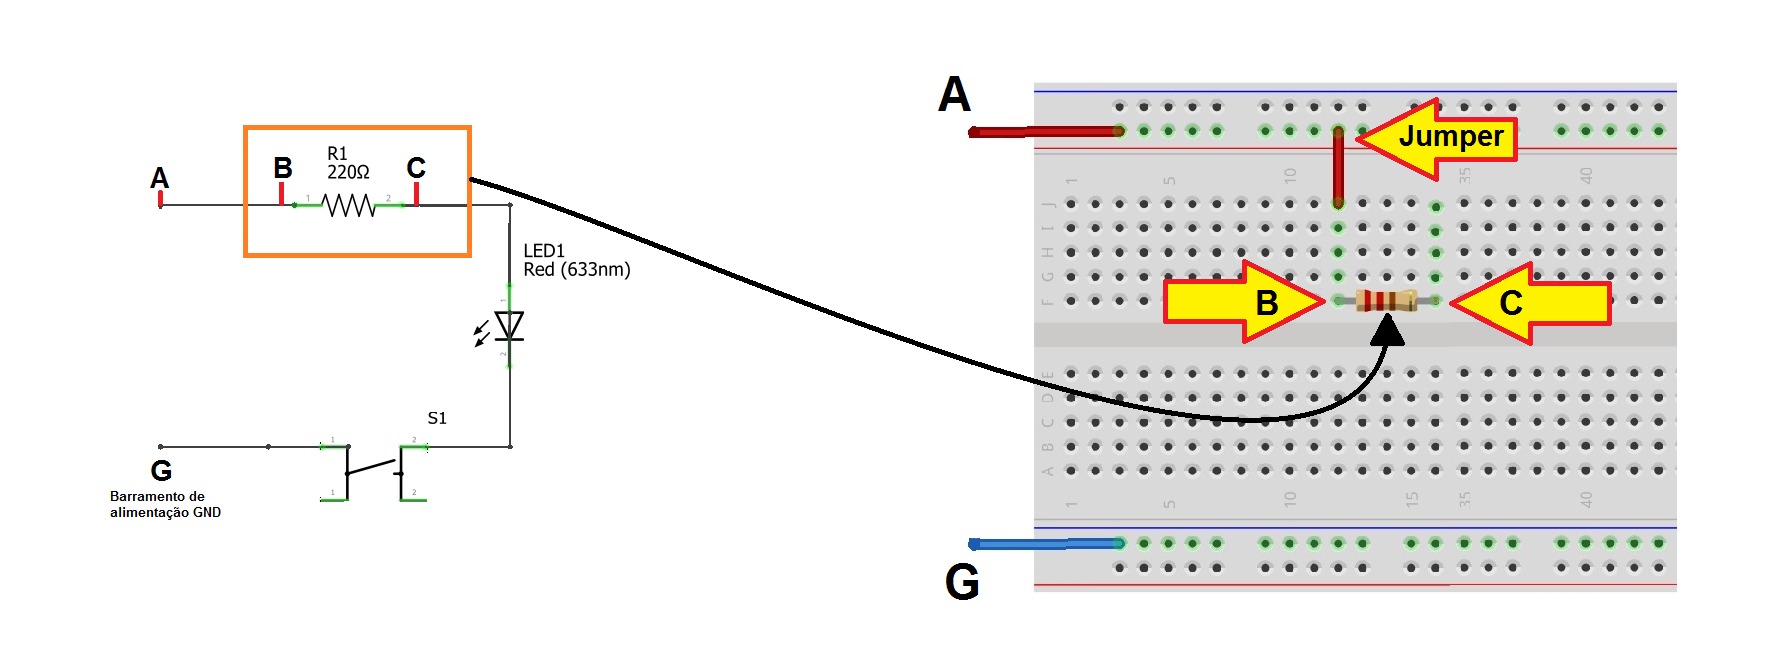 Passo 2 - montando circuito em uma matriz de contato - protoboard